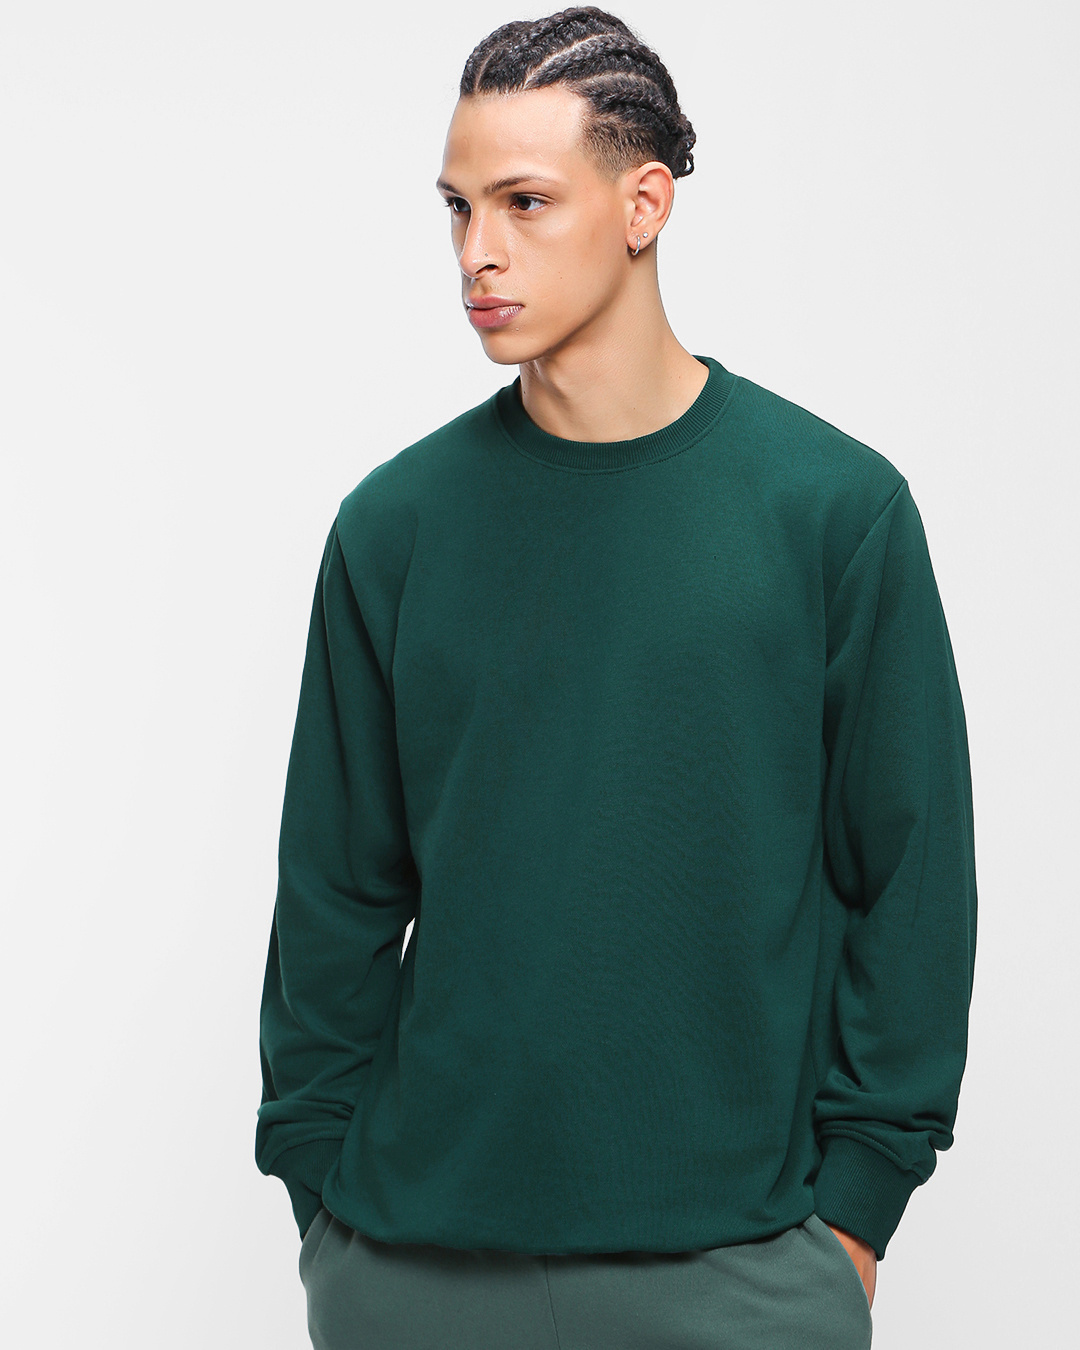 Buy Men's Deep Teal Sweatshirt Online at Bewakoof